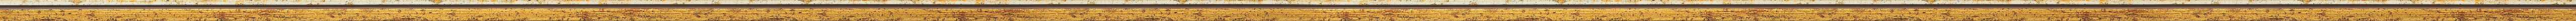 Λεπτή χρυσή κορνίζα με ασημί ρίγα frame